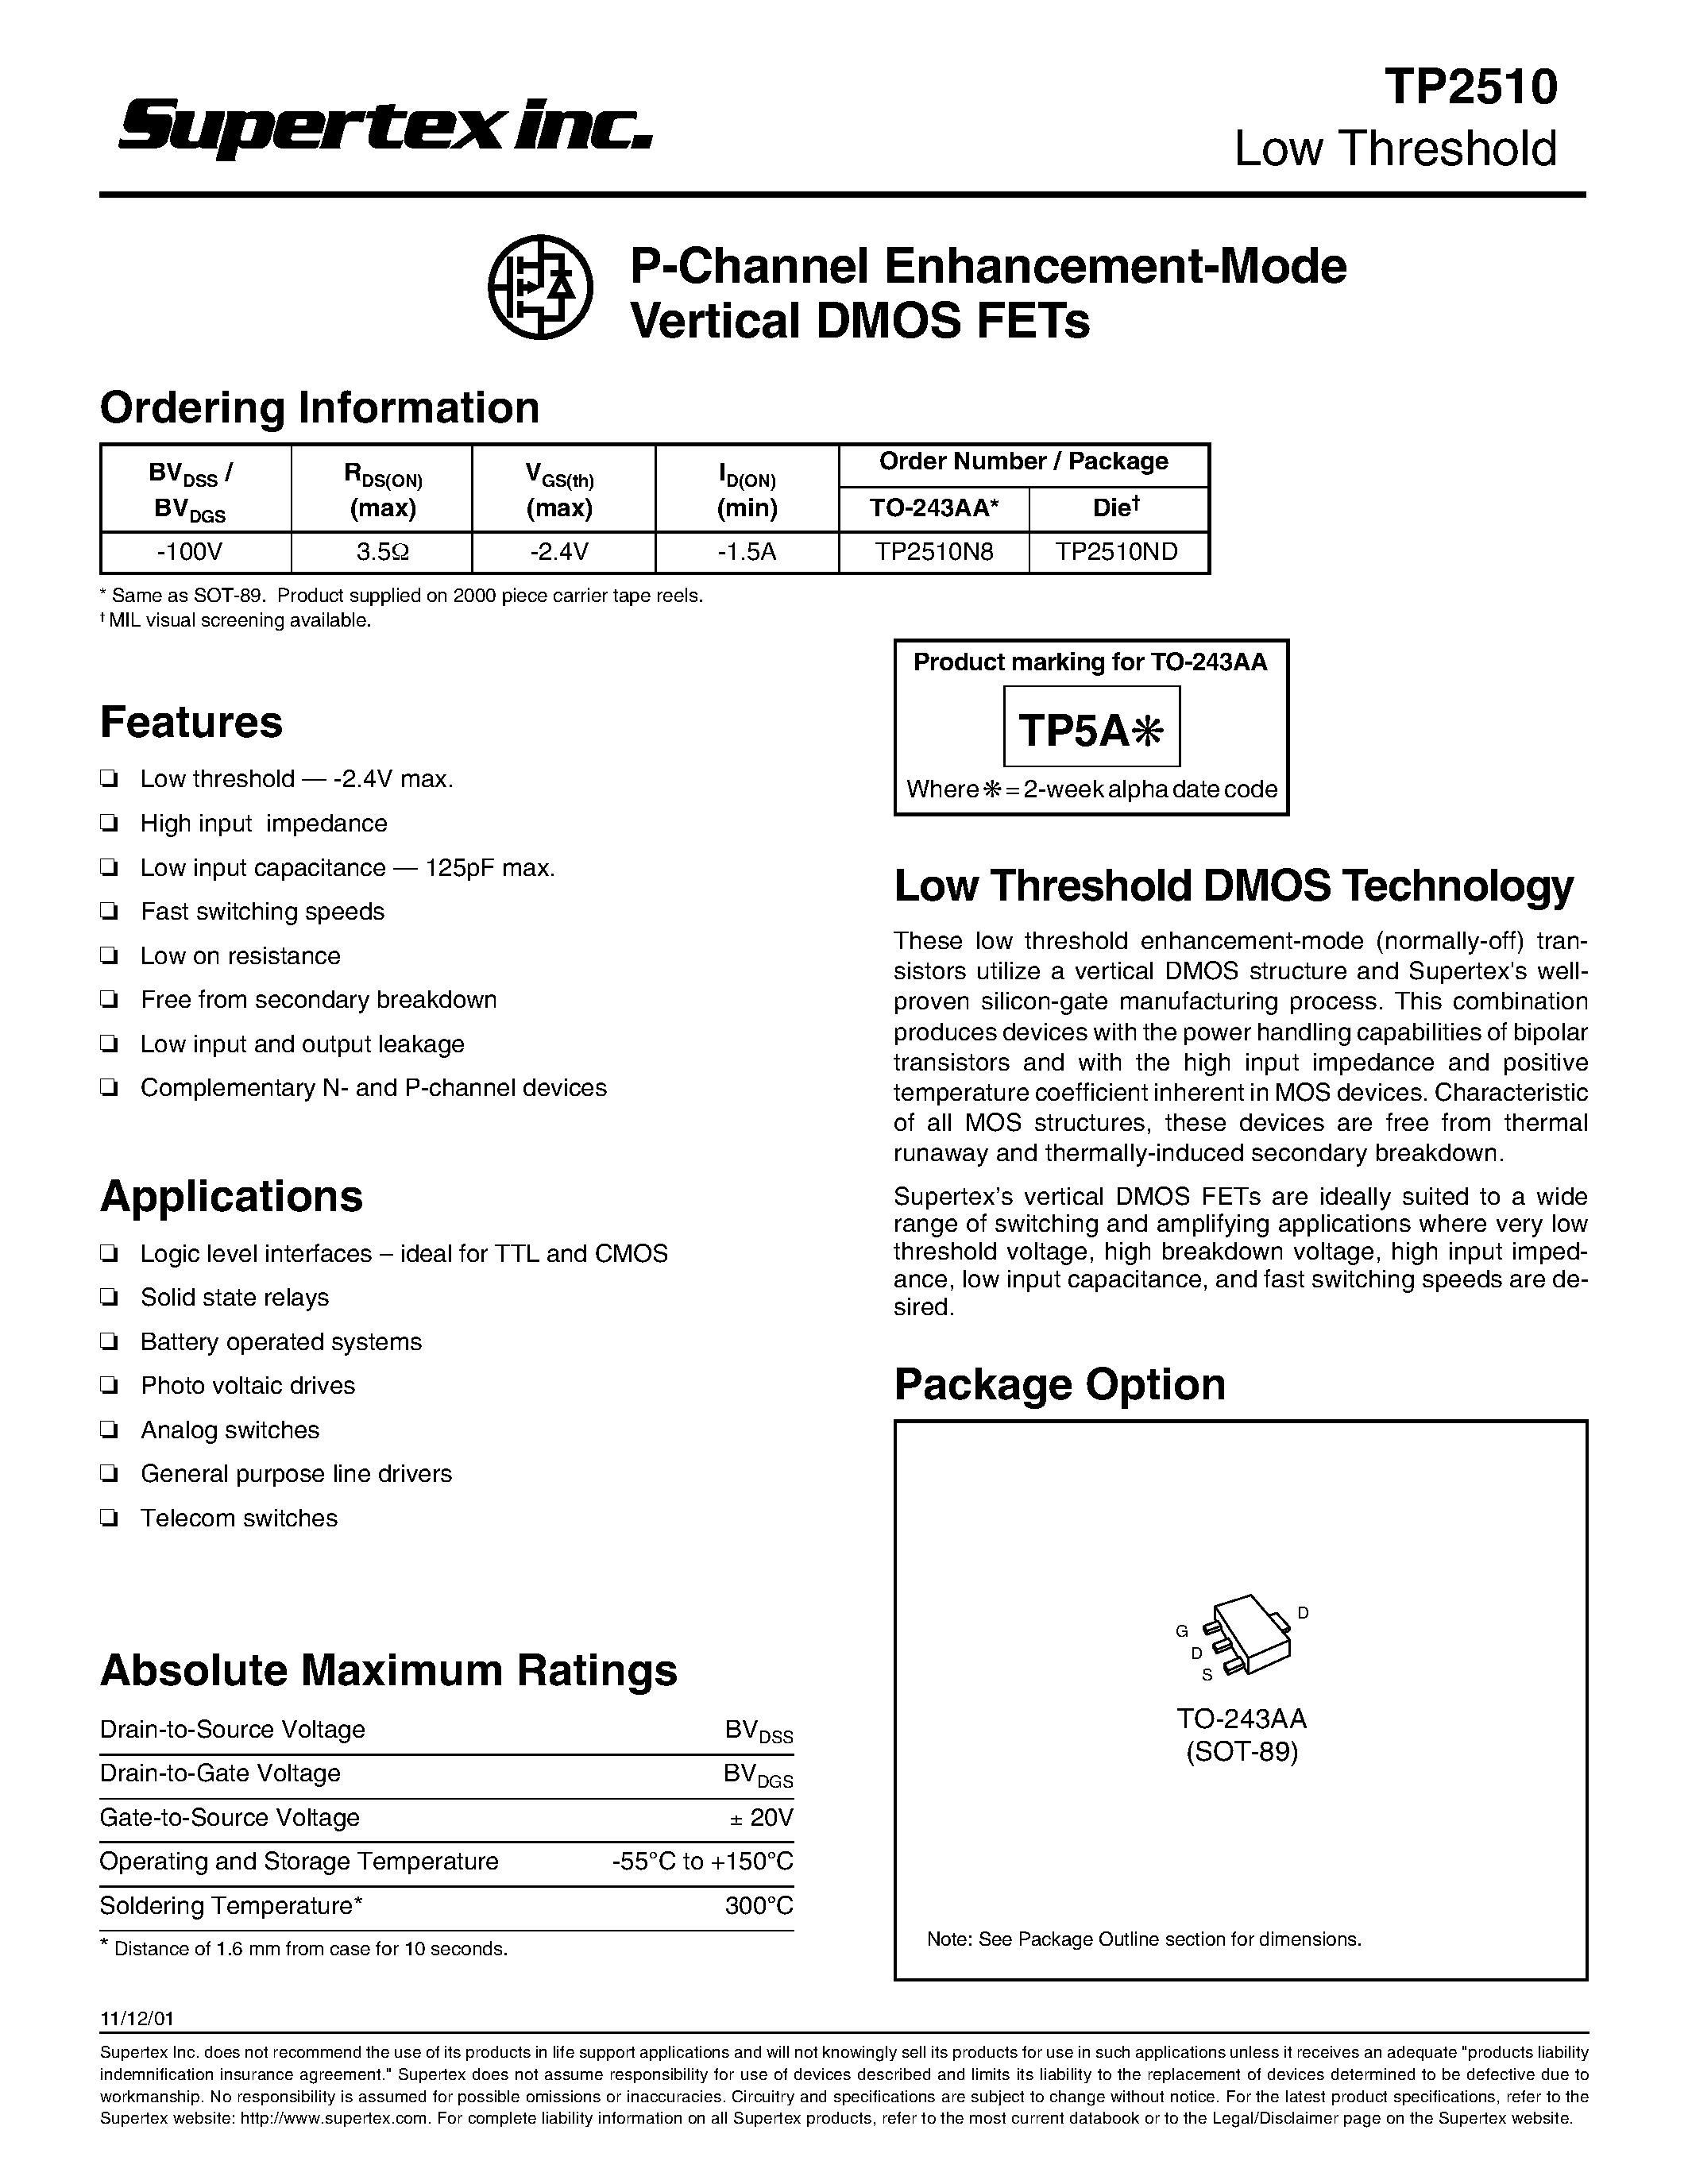 Даташит TP2510 - P-Channel Enhancement-Mode Vertical DMOS FETs страница 1